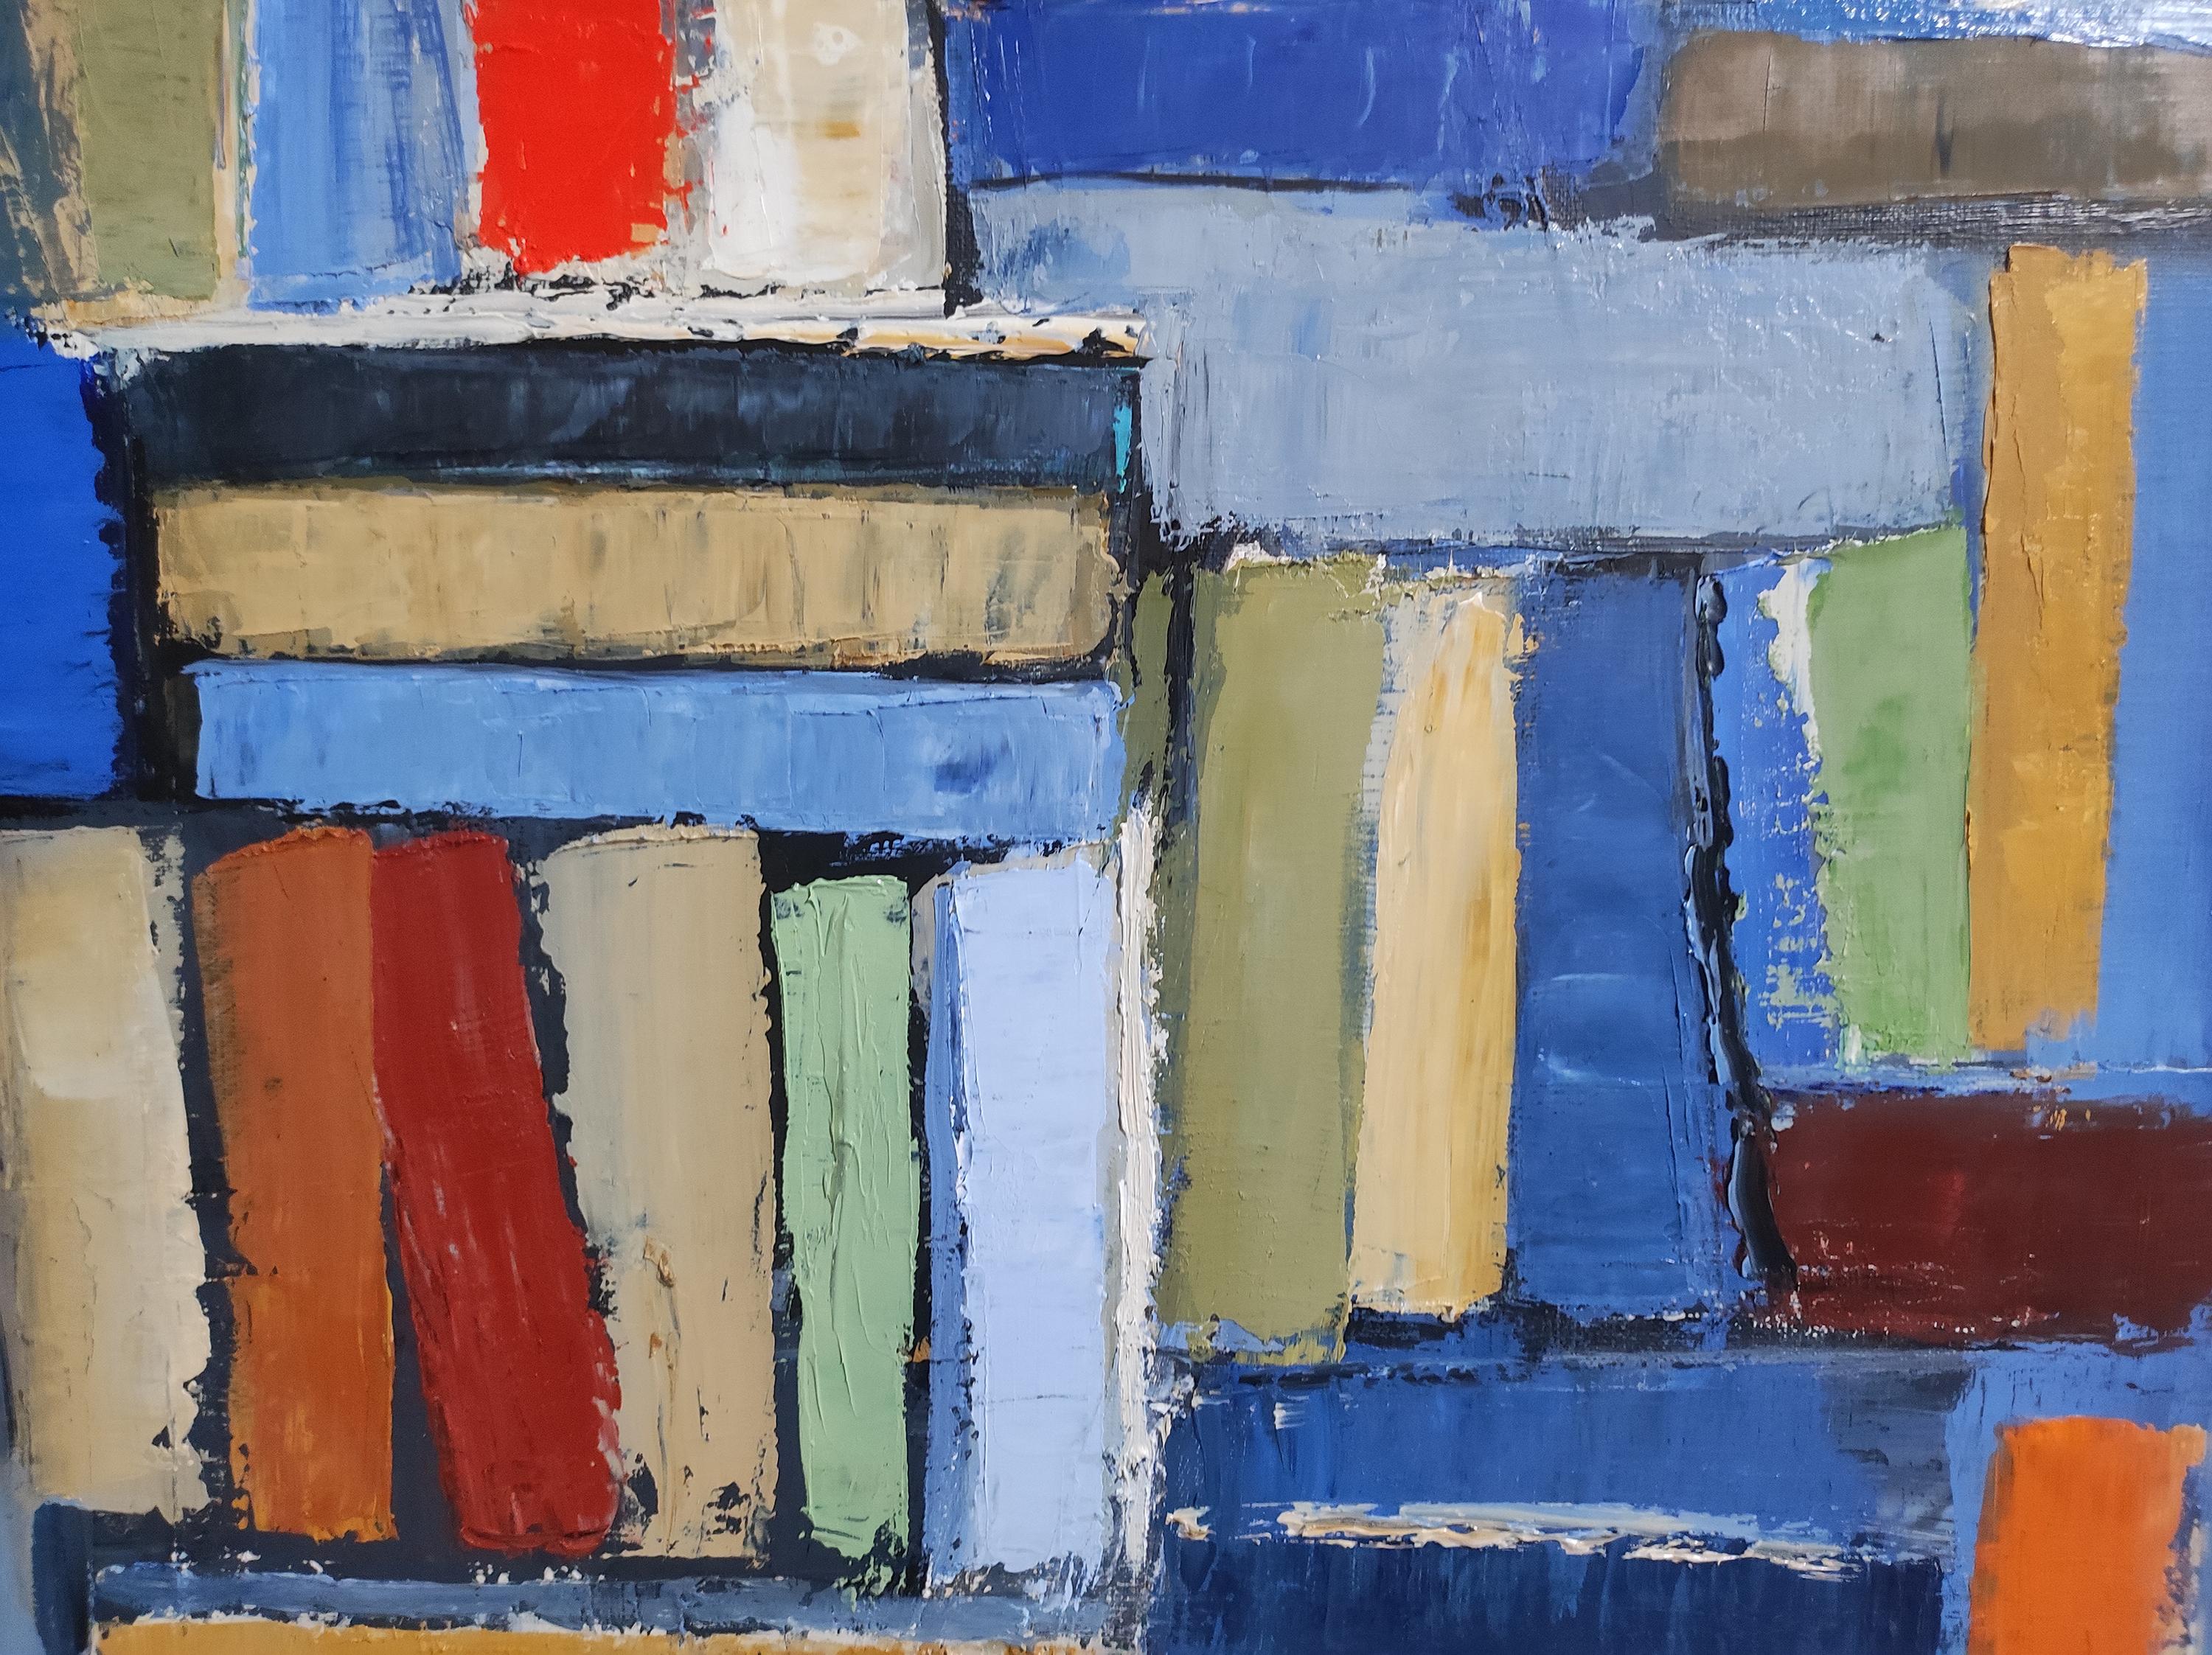 Bibliothek 2, farbige Bücher in Bibliothek, abstrakt, Expressionismus, Öl auf Leinwand 5